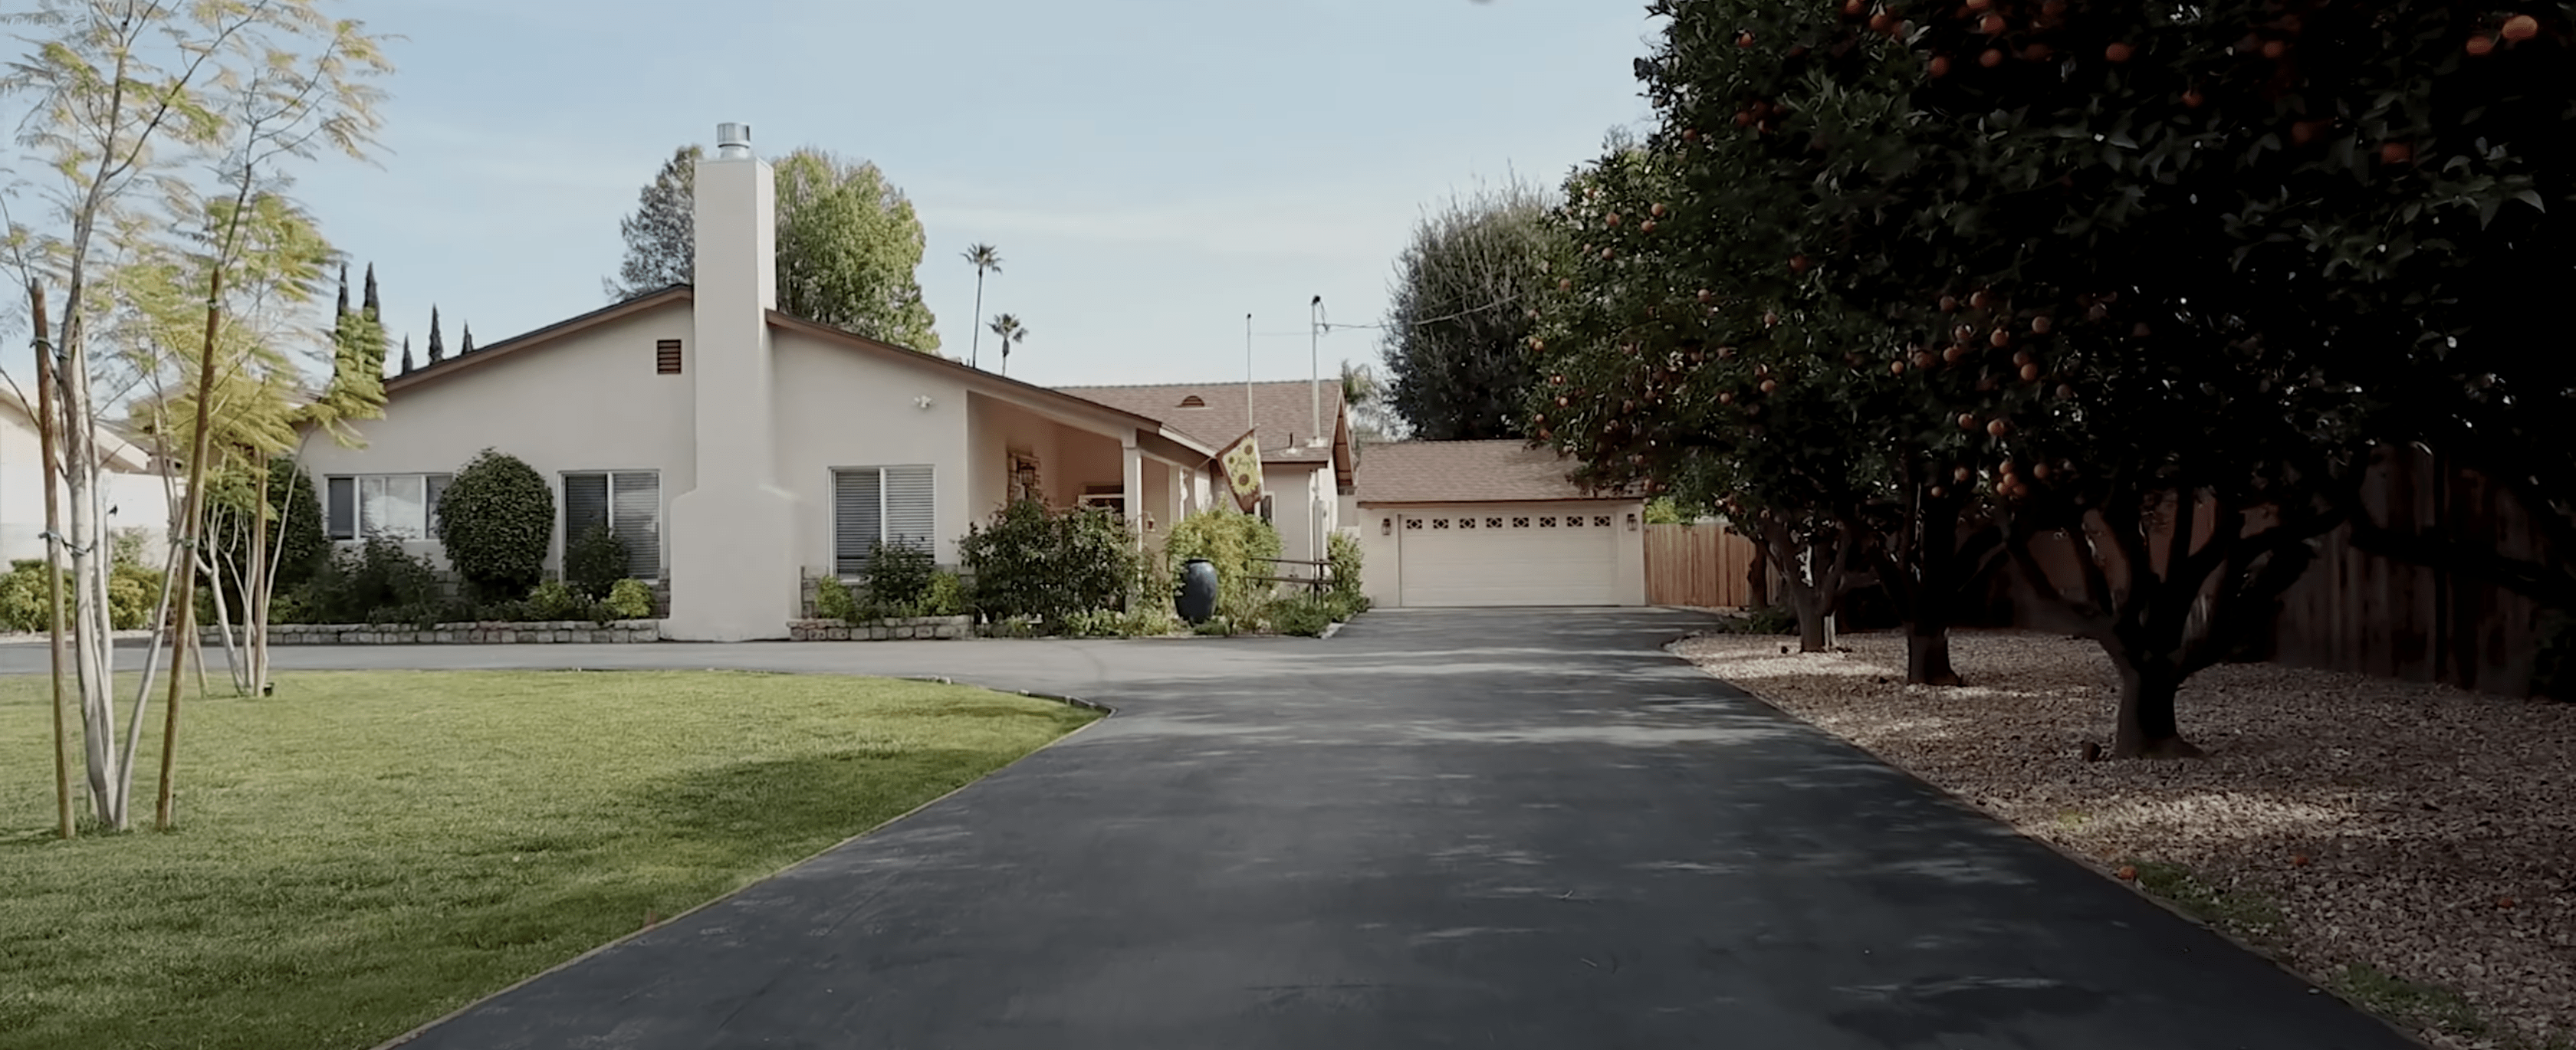 Grant Serenity Homes of San Fernando Valley